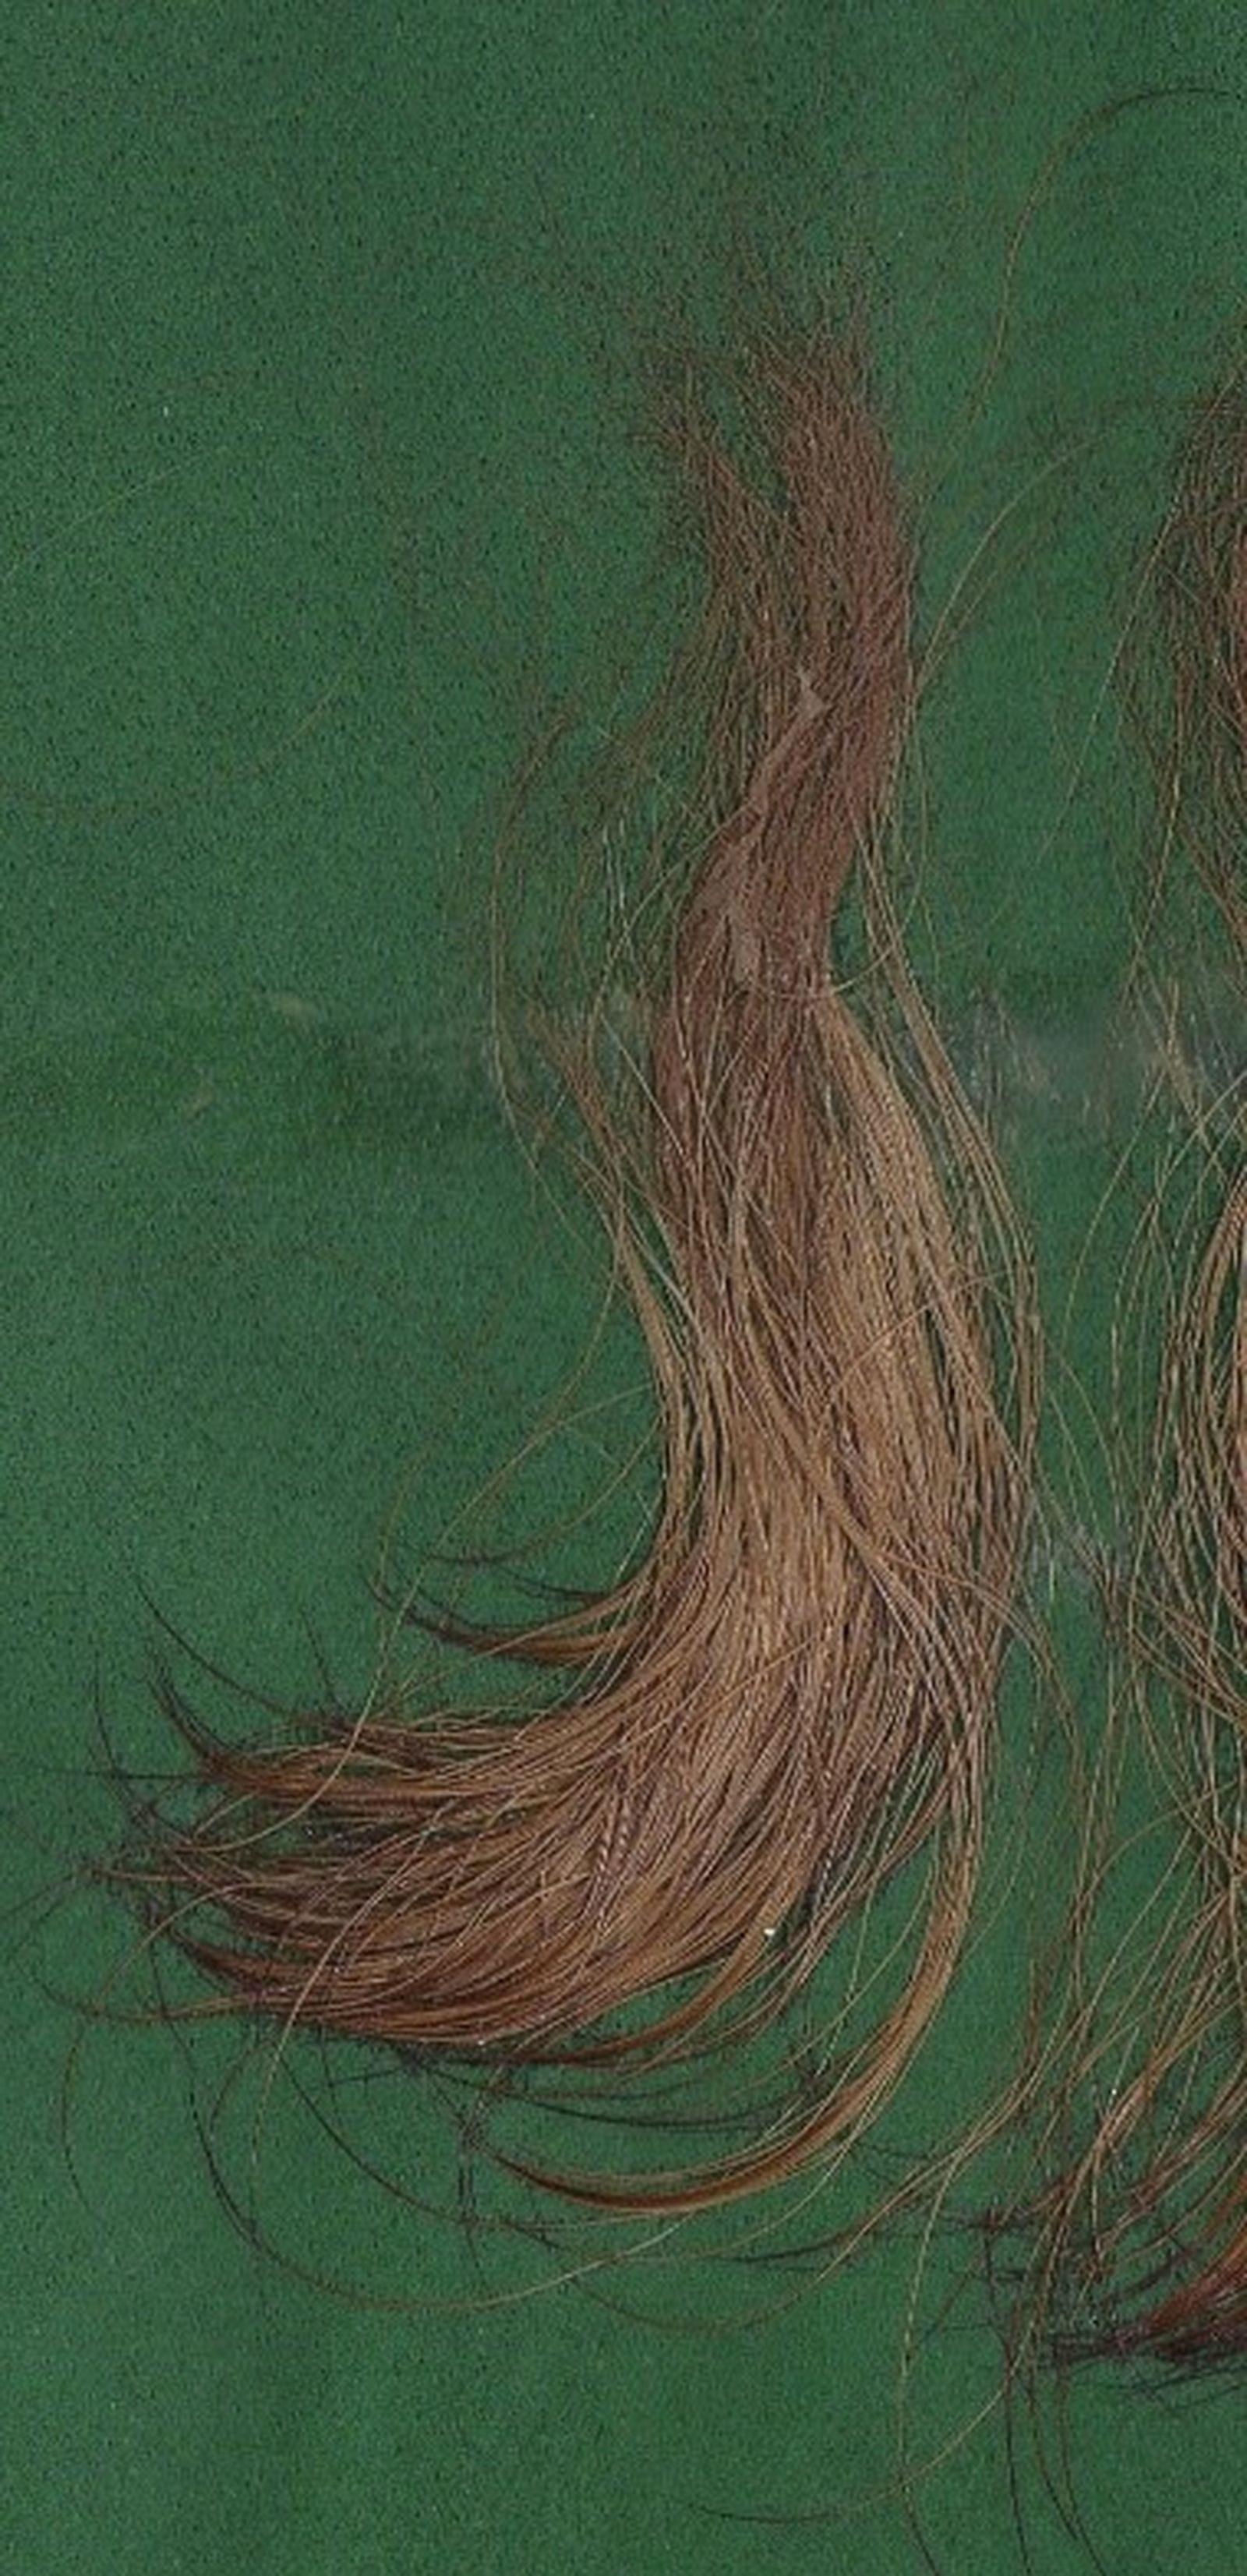 Braune Haare vom Irish Terrier auf grünem Untergrund in Großaufnahme